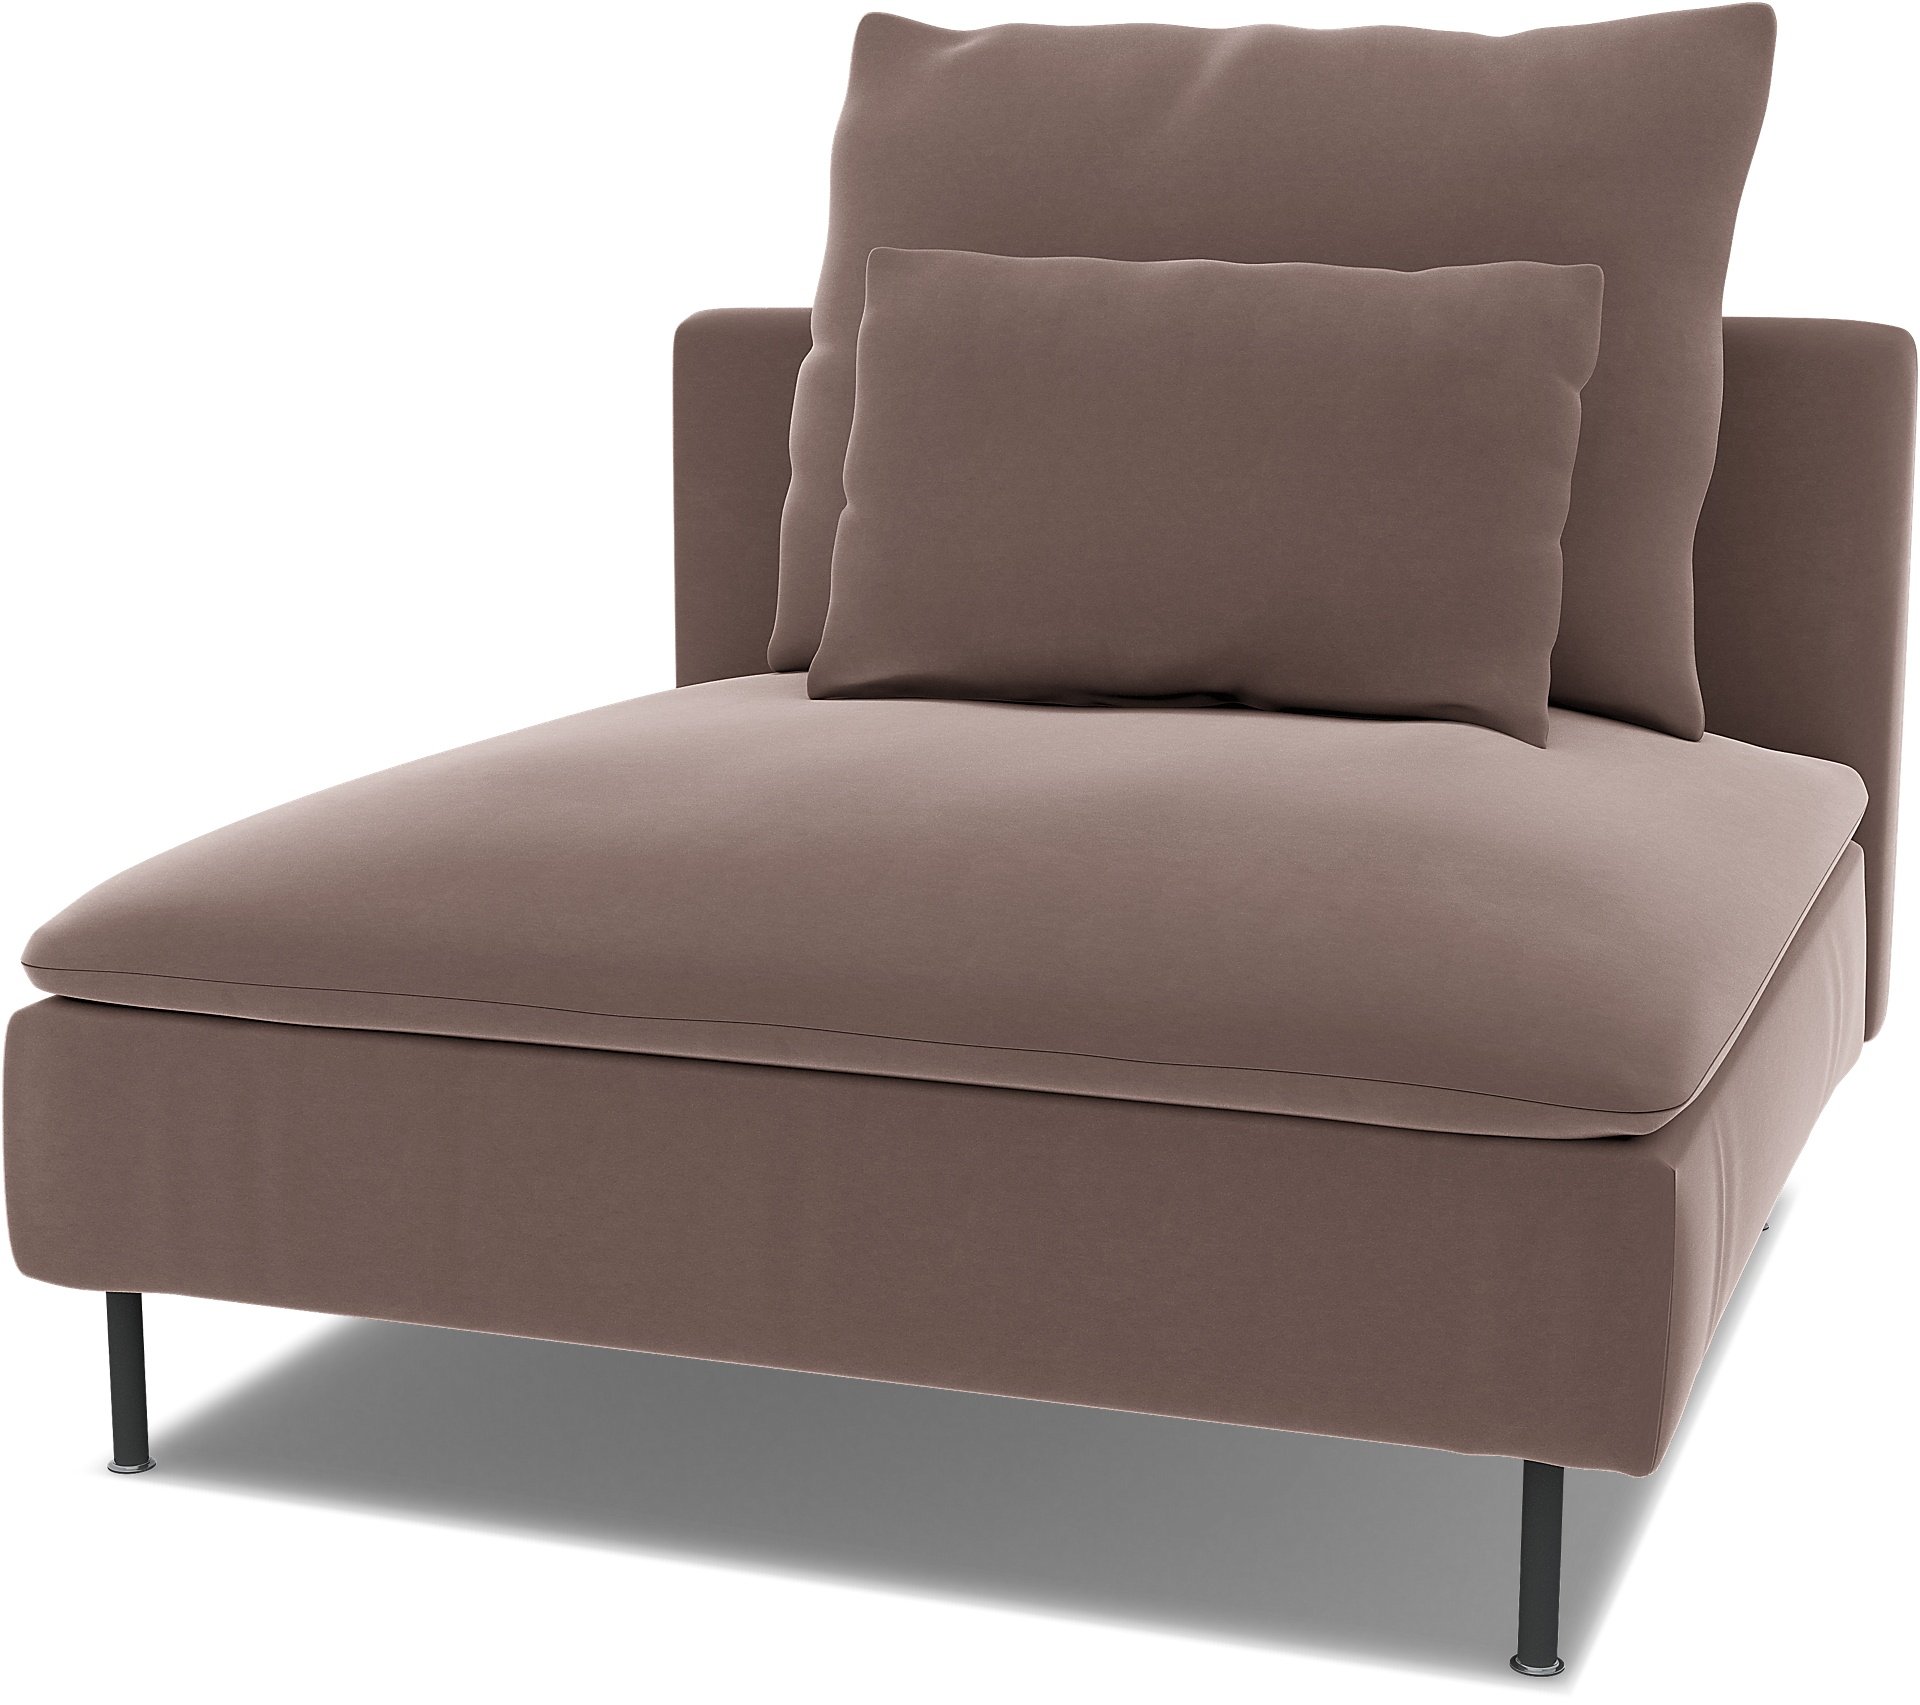 Spare seat cushion cover for SODERHAMN 1 SEAT SECTION , Lavender, Velvet - Bemz